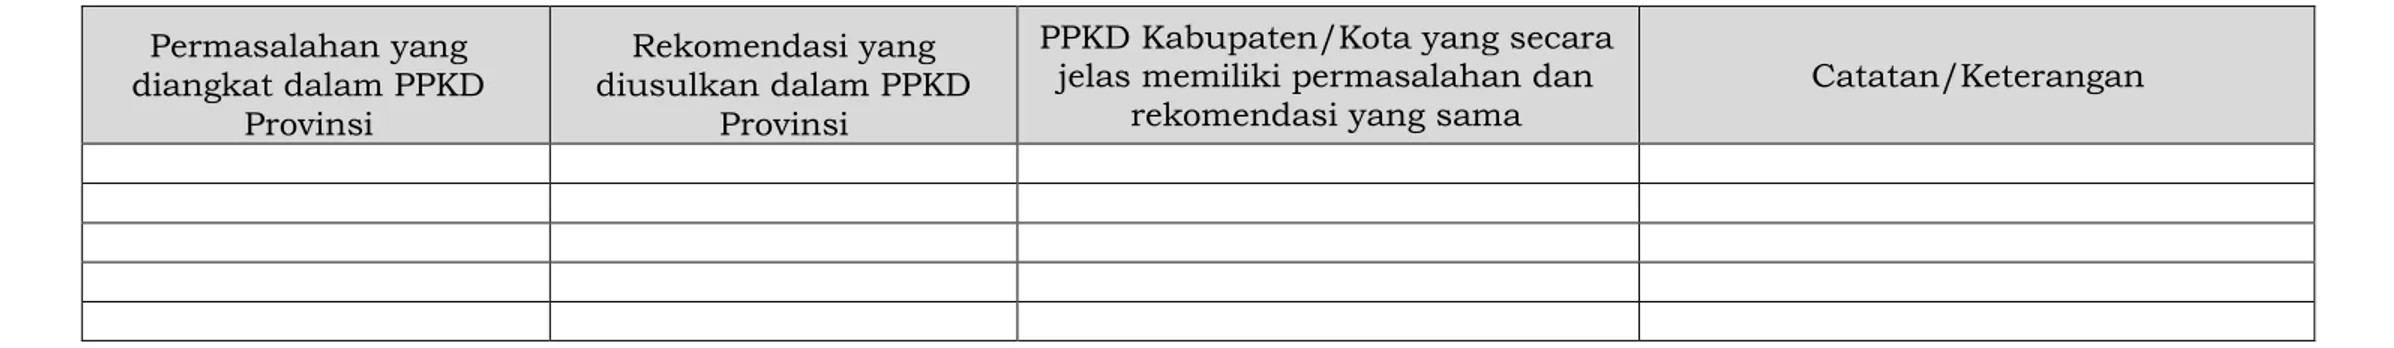 Tabel A.1 Pemetaan Permasalahan dan Rekomendasi antara PPKD Provinsi dengan PPKD Kabupaten/Kota  Permasalahan yang  diangkat dalam PPKD  Provinsi  Rekomendasi yang  diusulkan dalam PPKD Provinsi 